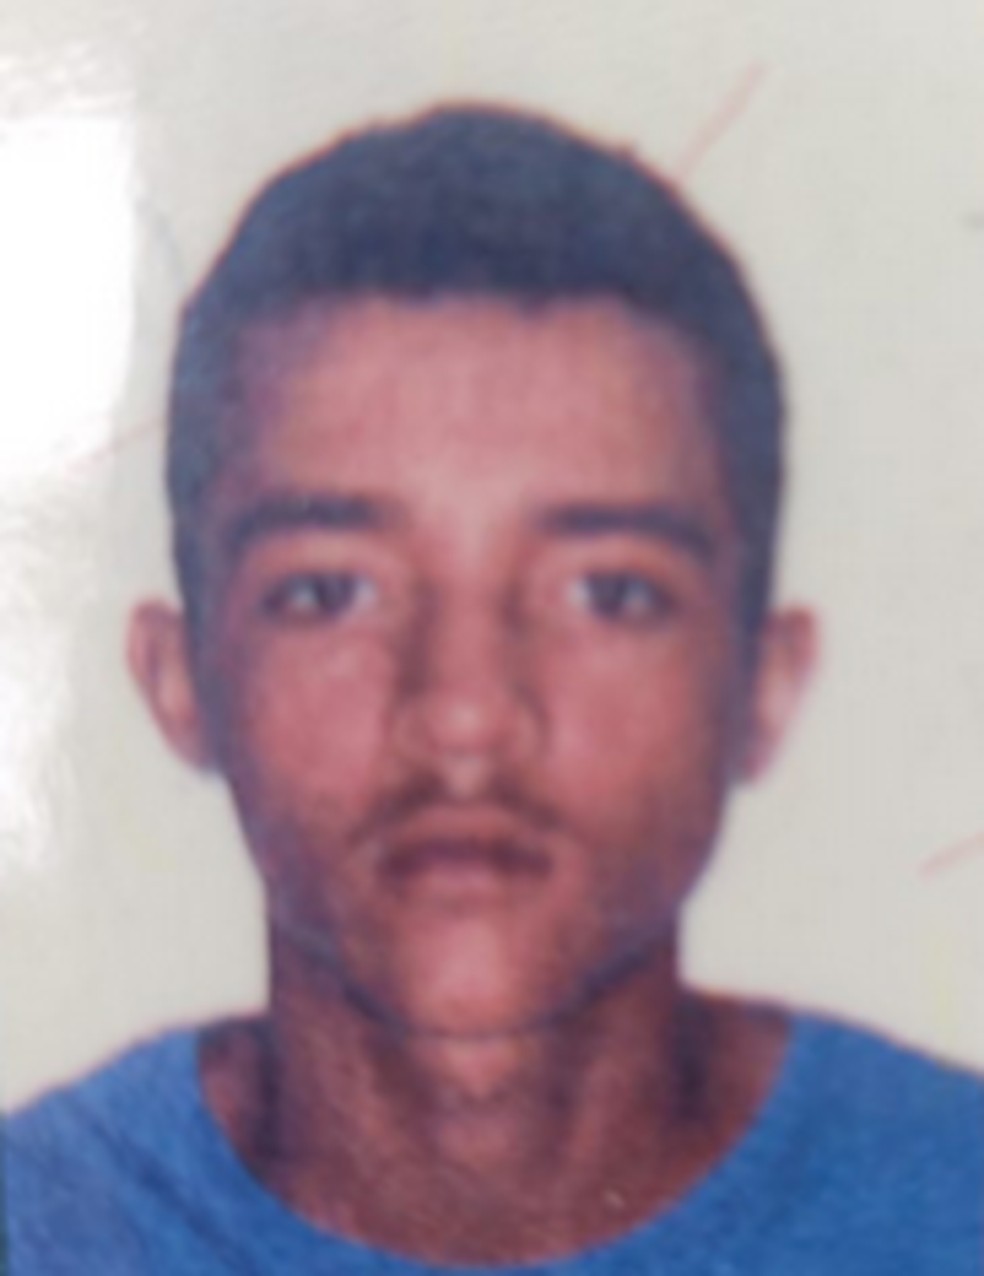 Vítima de homicídio em Caruaru — Foto: Caruaru no Face/Portal EspiAqui/Reprodução